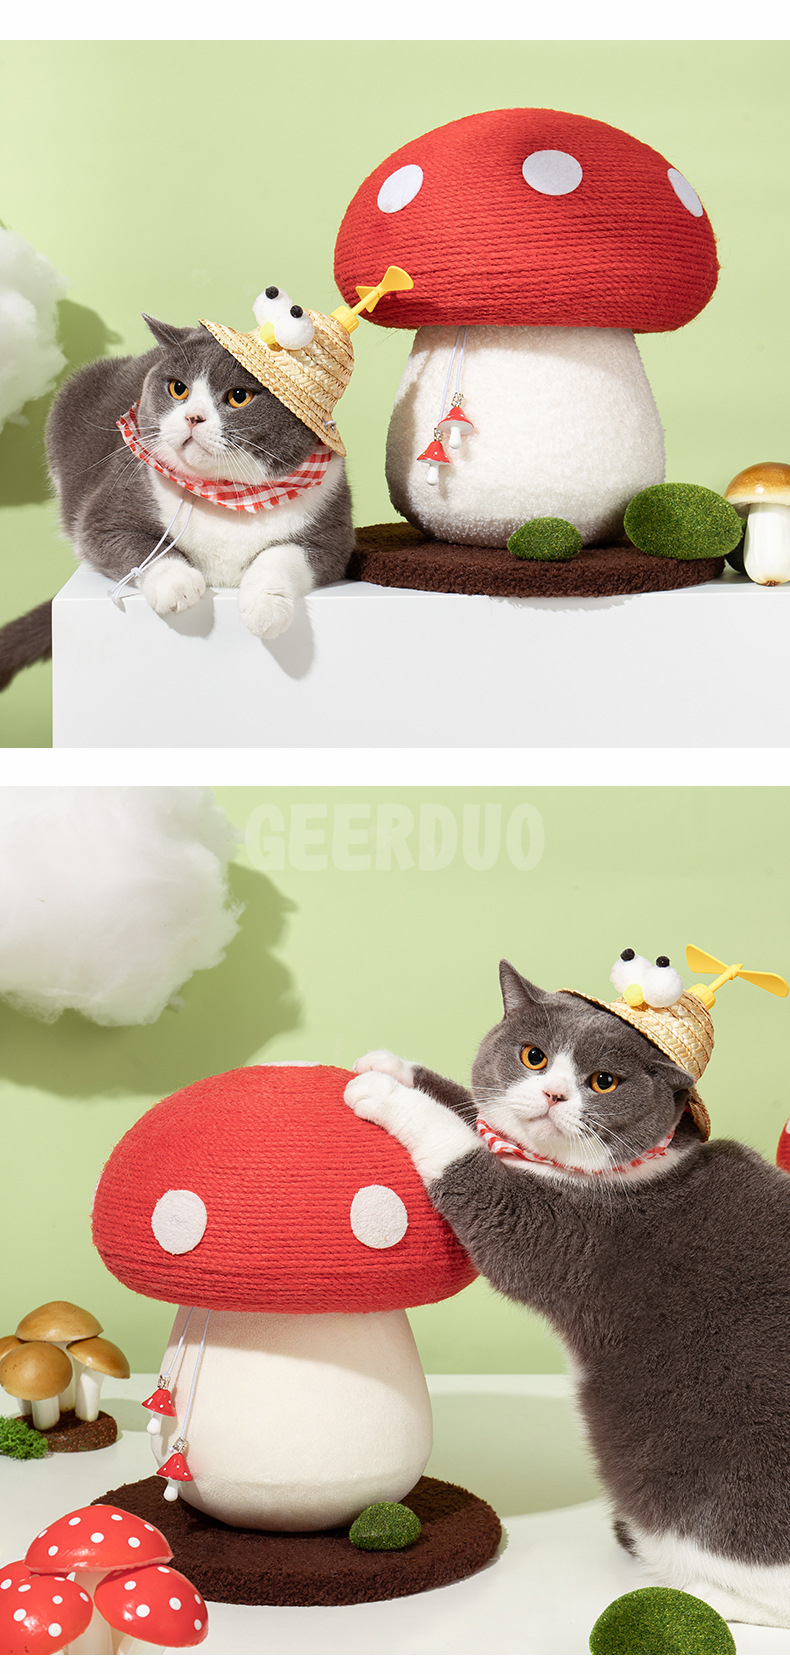 Poste para rascar gatos con forma de hongo Juguetes interactivos para gatos (6)